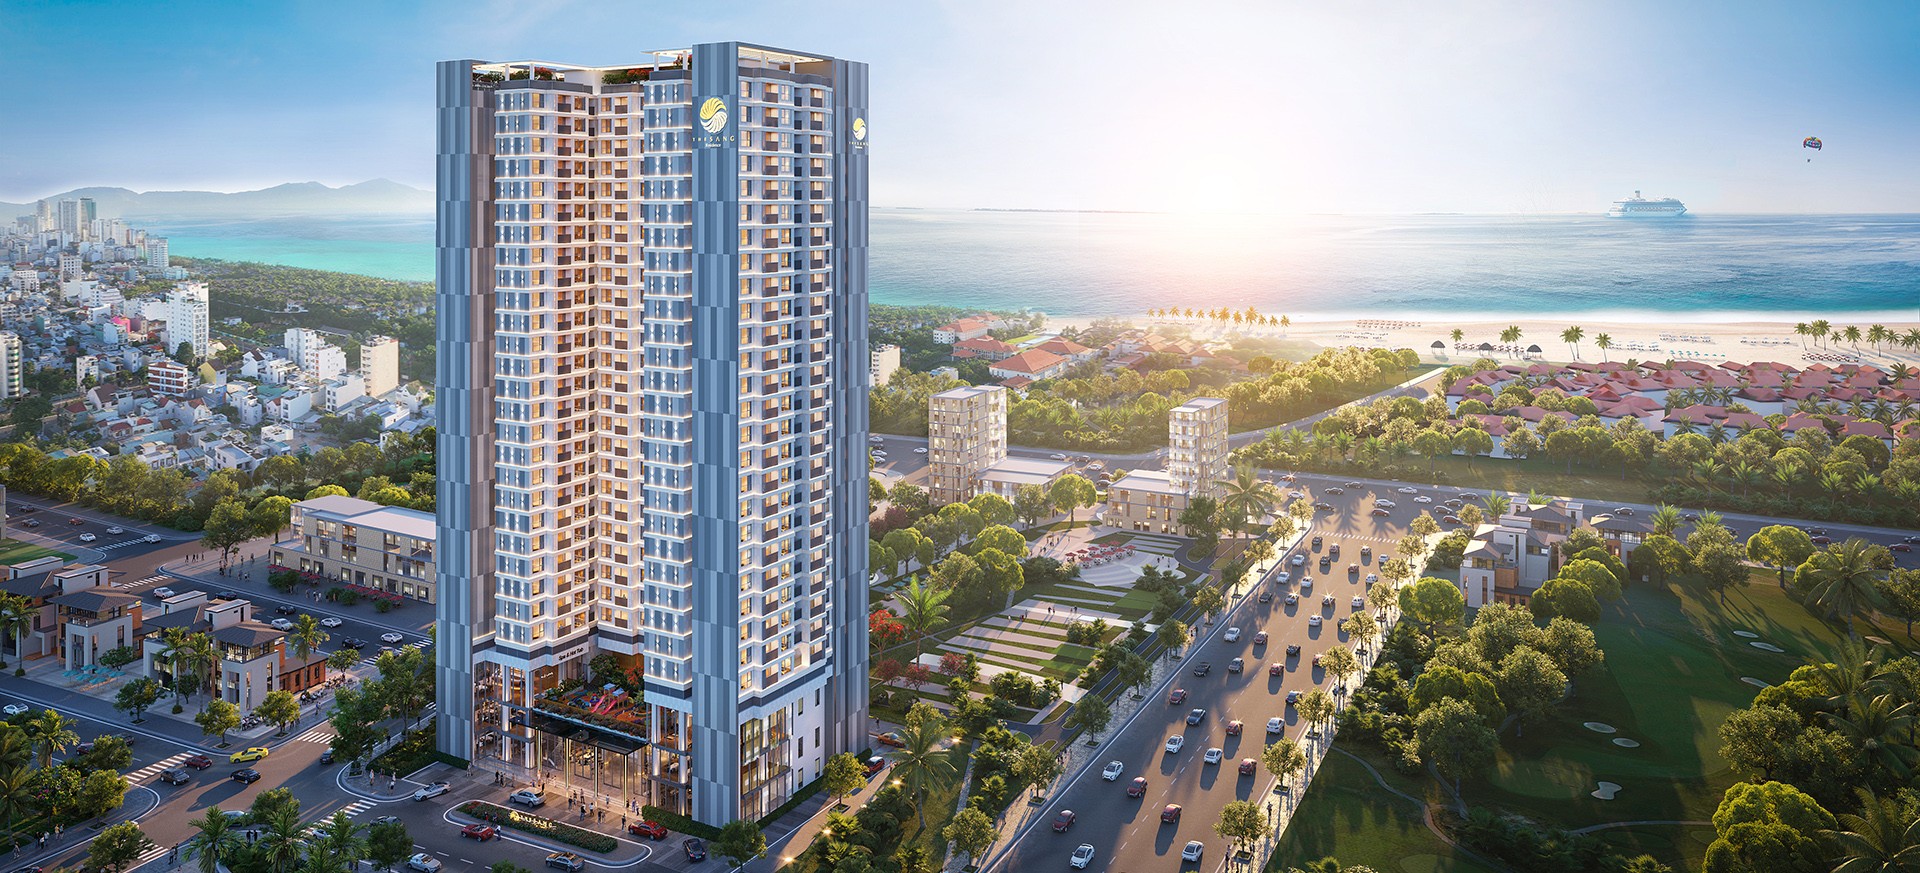 Bất động sản Việt Nam sẽ tăng trưởng mạnh trong tương lai - Viet Nam Smart City